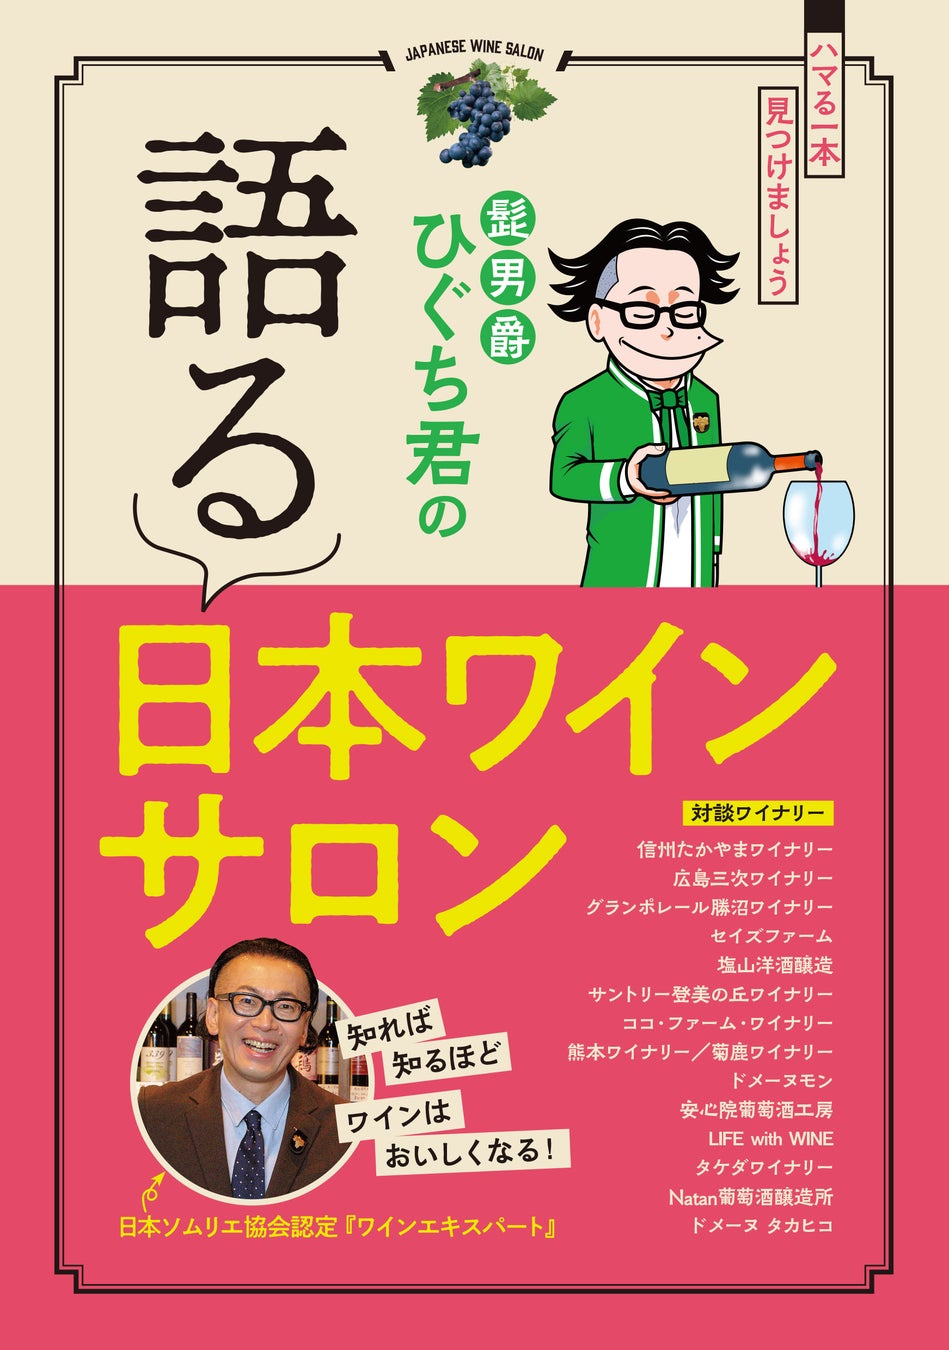 『髭男爵ひぐち君の 語る 日本ワインサロン』発売